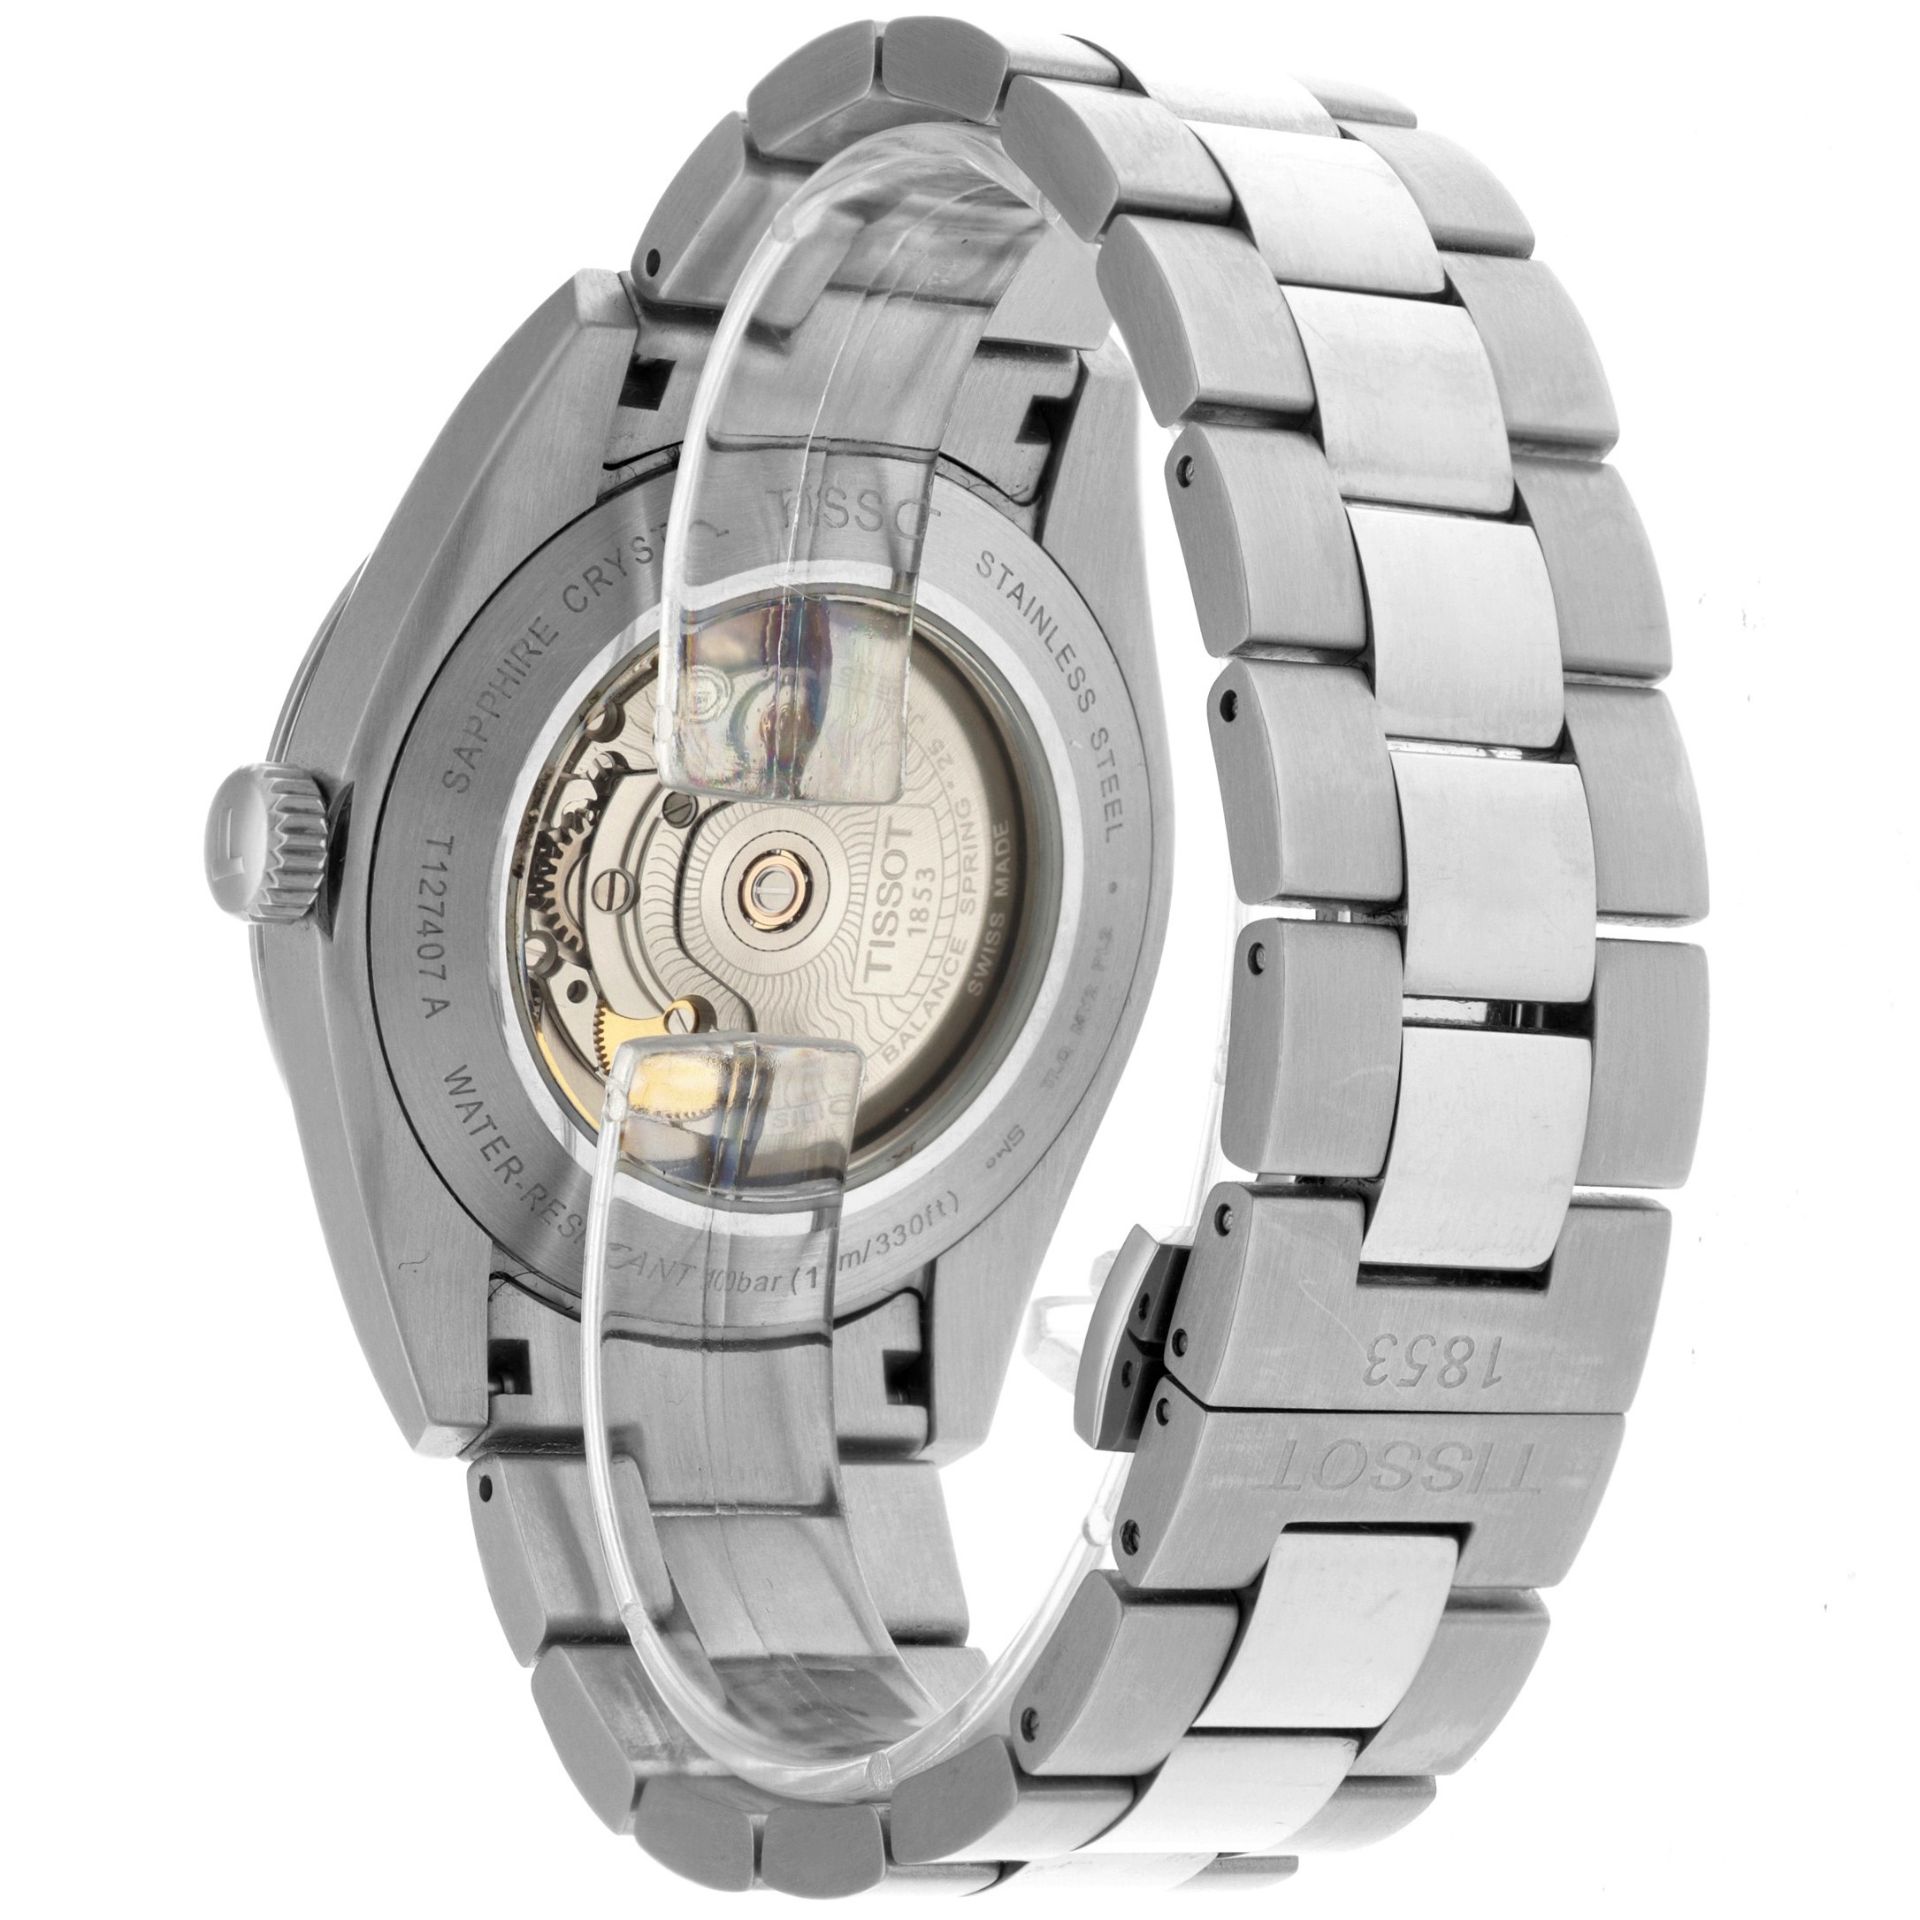 No Reserve - Tissot Gentleman Powermatic 80 Silicon T127407 - Men's watch. - Image 3 of 6